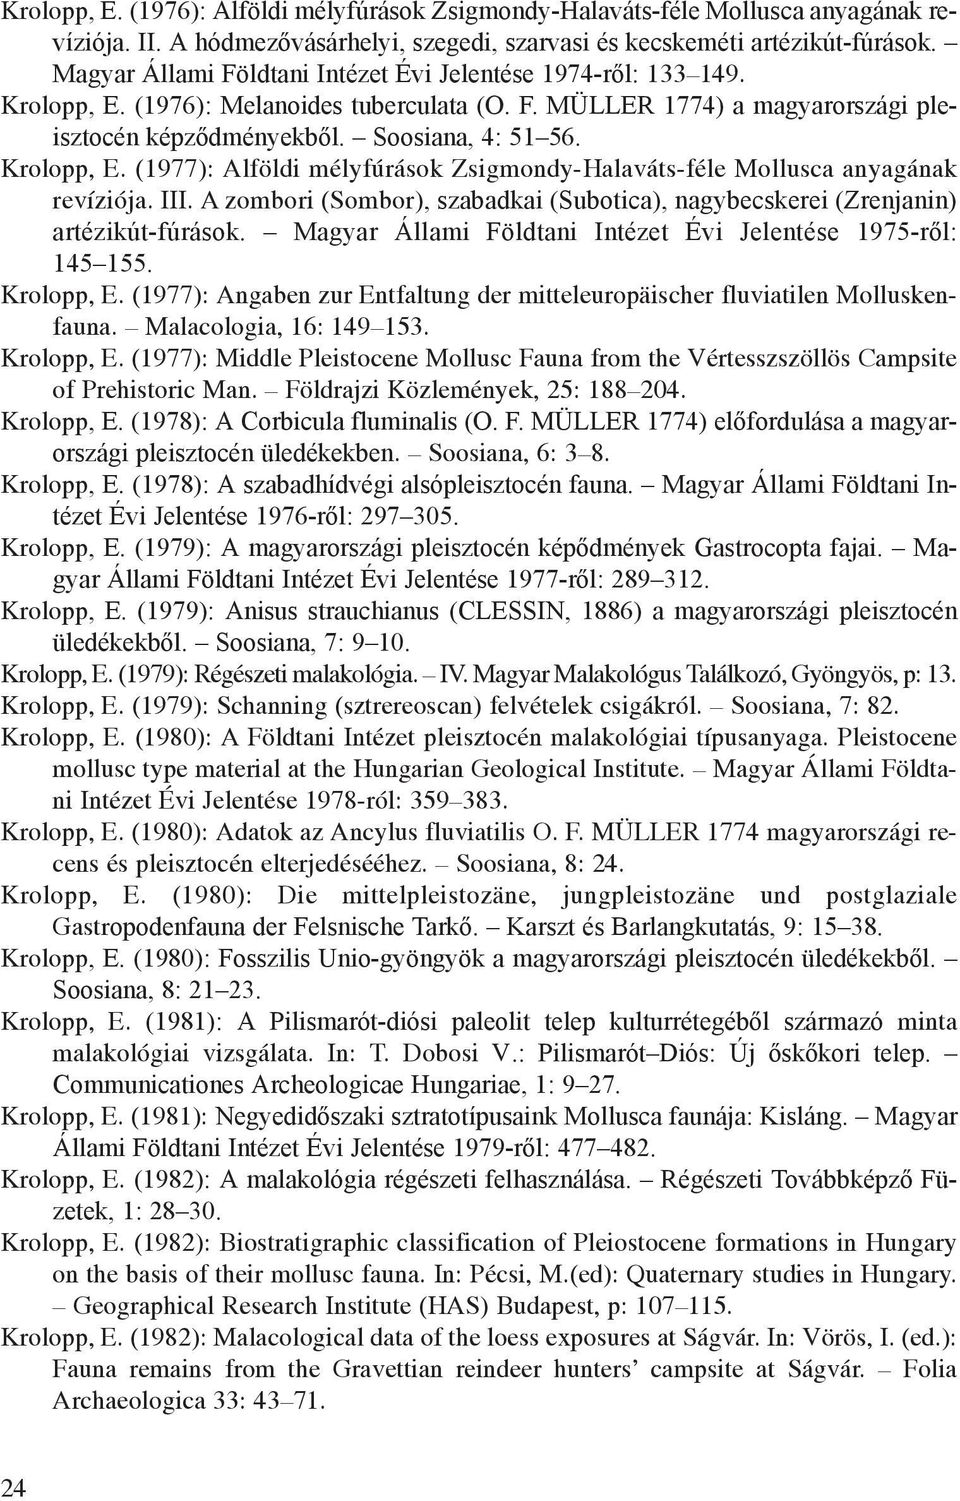 Krolopp, E. (1977): Alföldi mélyfúrások Zsigmondy-Halaváts-féle Mollusca anyagának revíziója. III. A zombori (Sombor), szabadkai (Subotica), nagybecskerei (Zrenjanin) artézikút-fúrások.